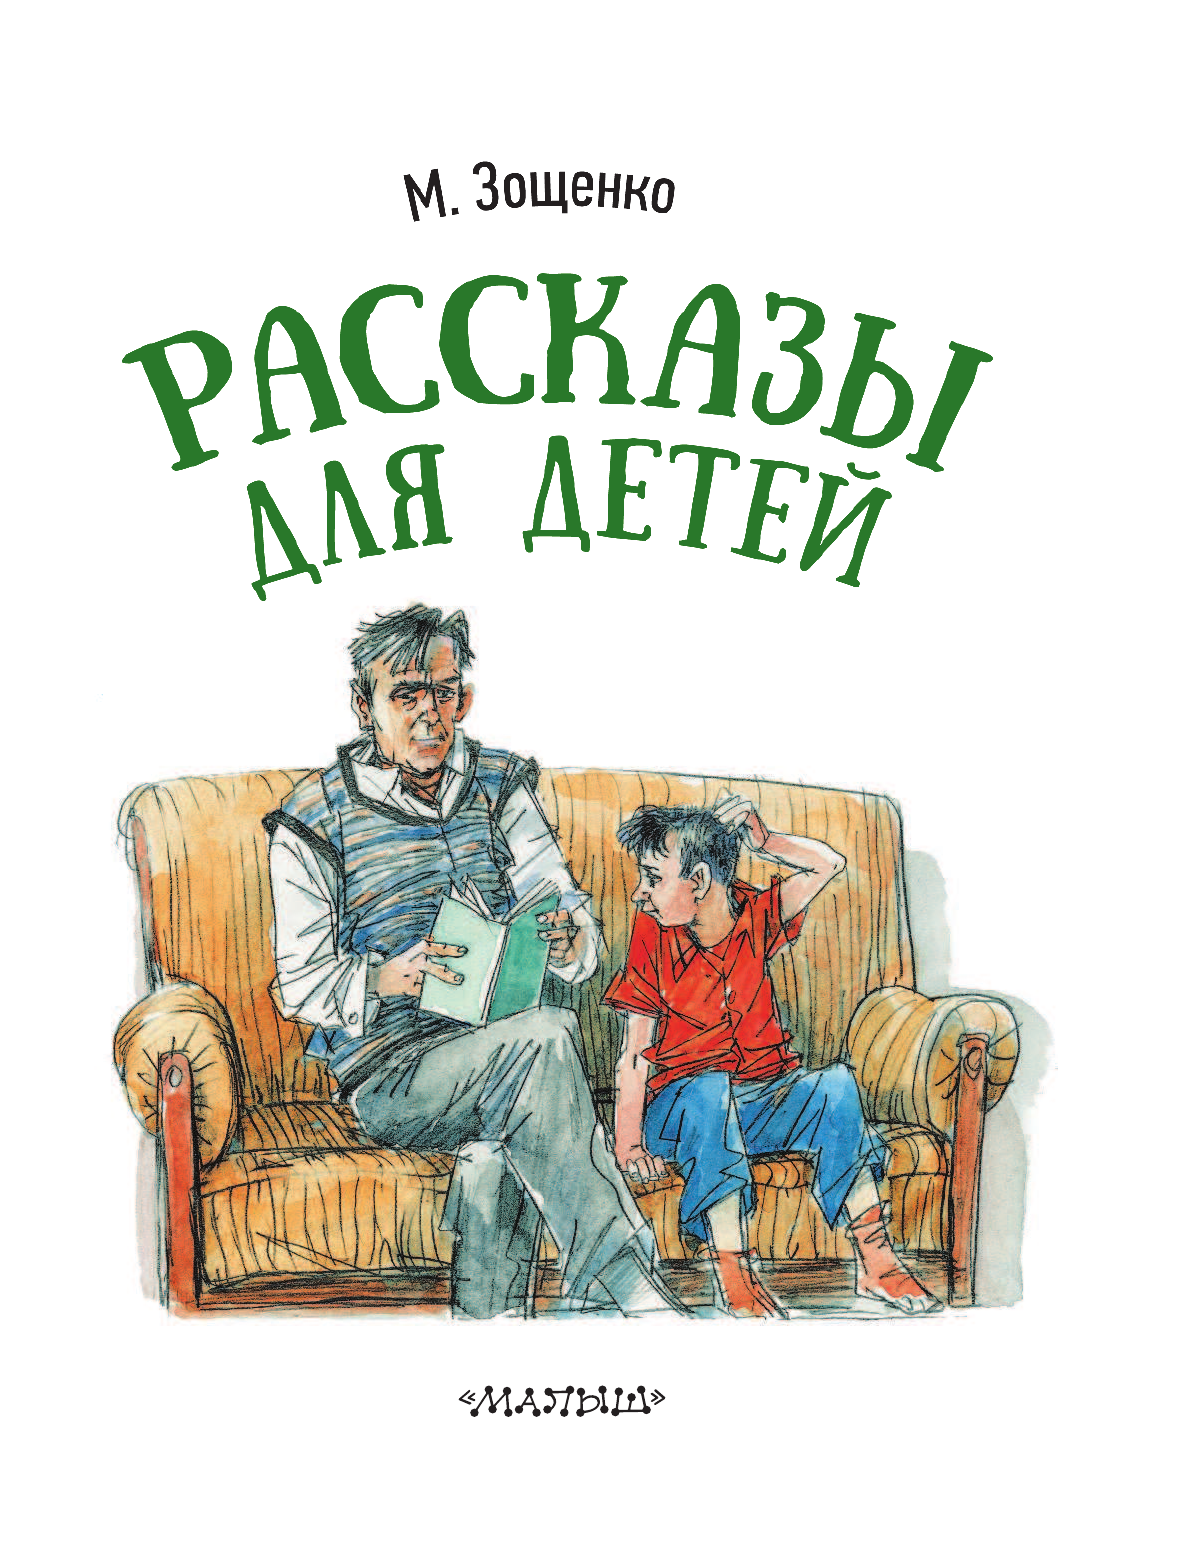 Иллюстрации к рассказам Зощенко для детей. Книга Зощенко рассказы для детей.